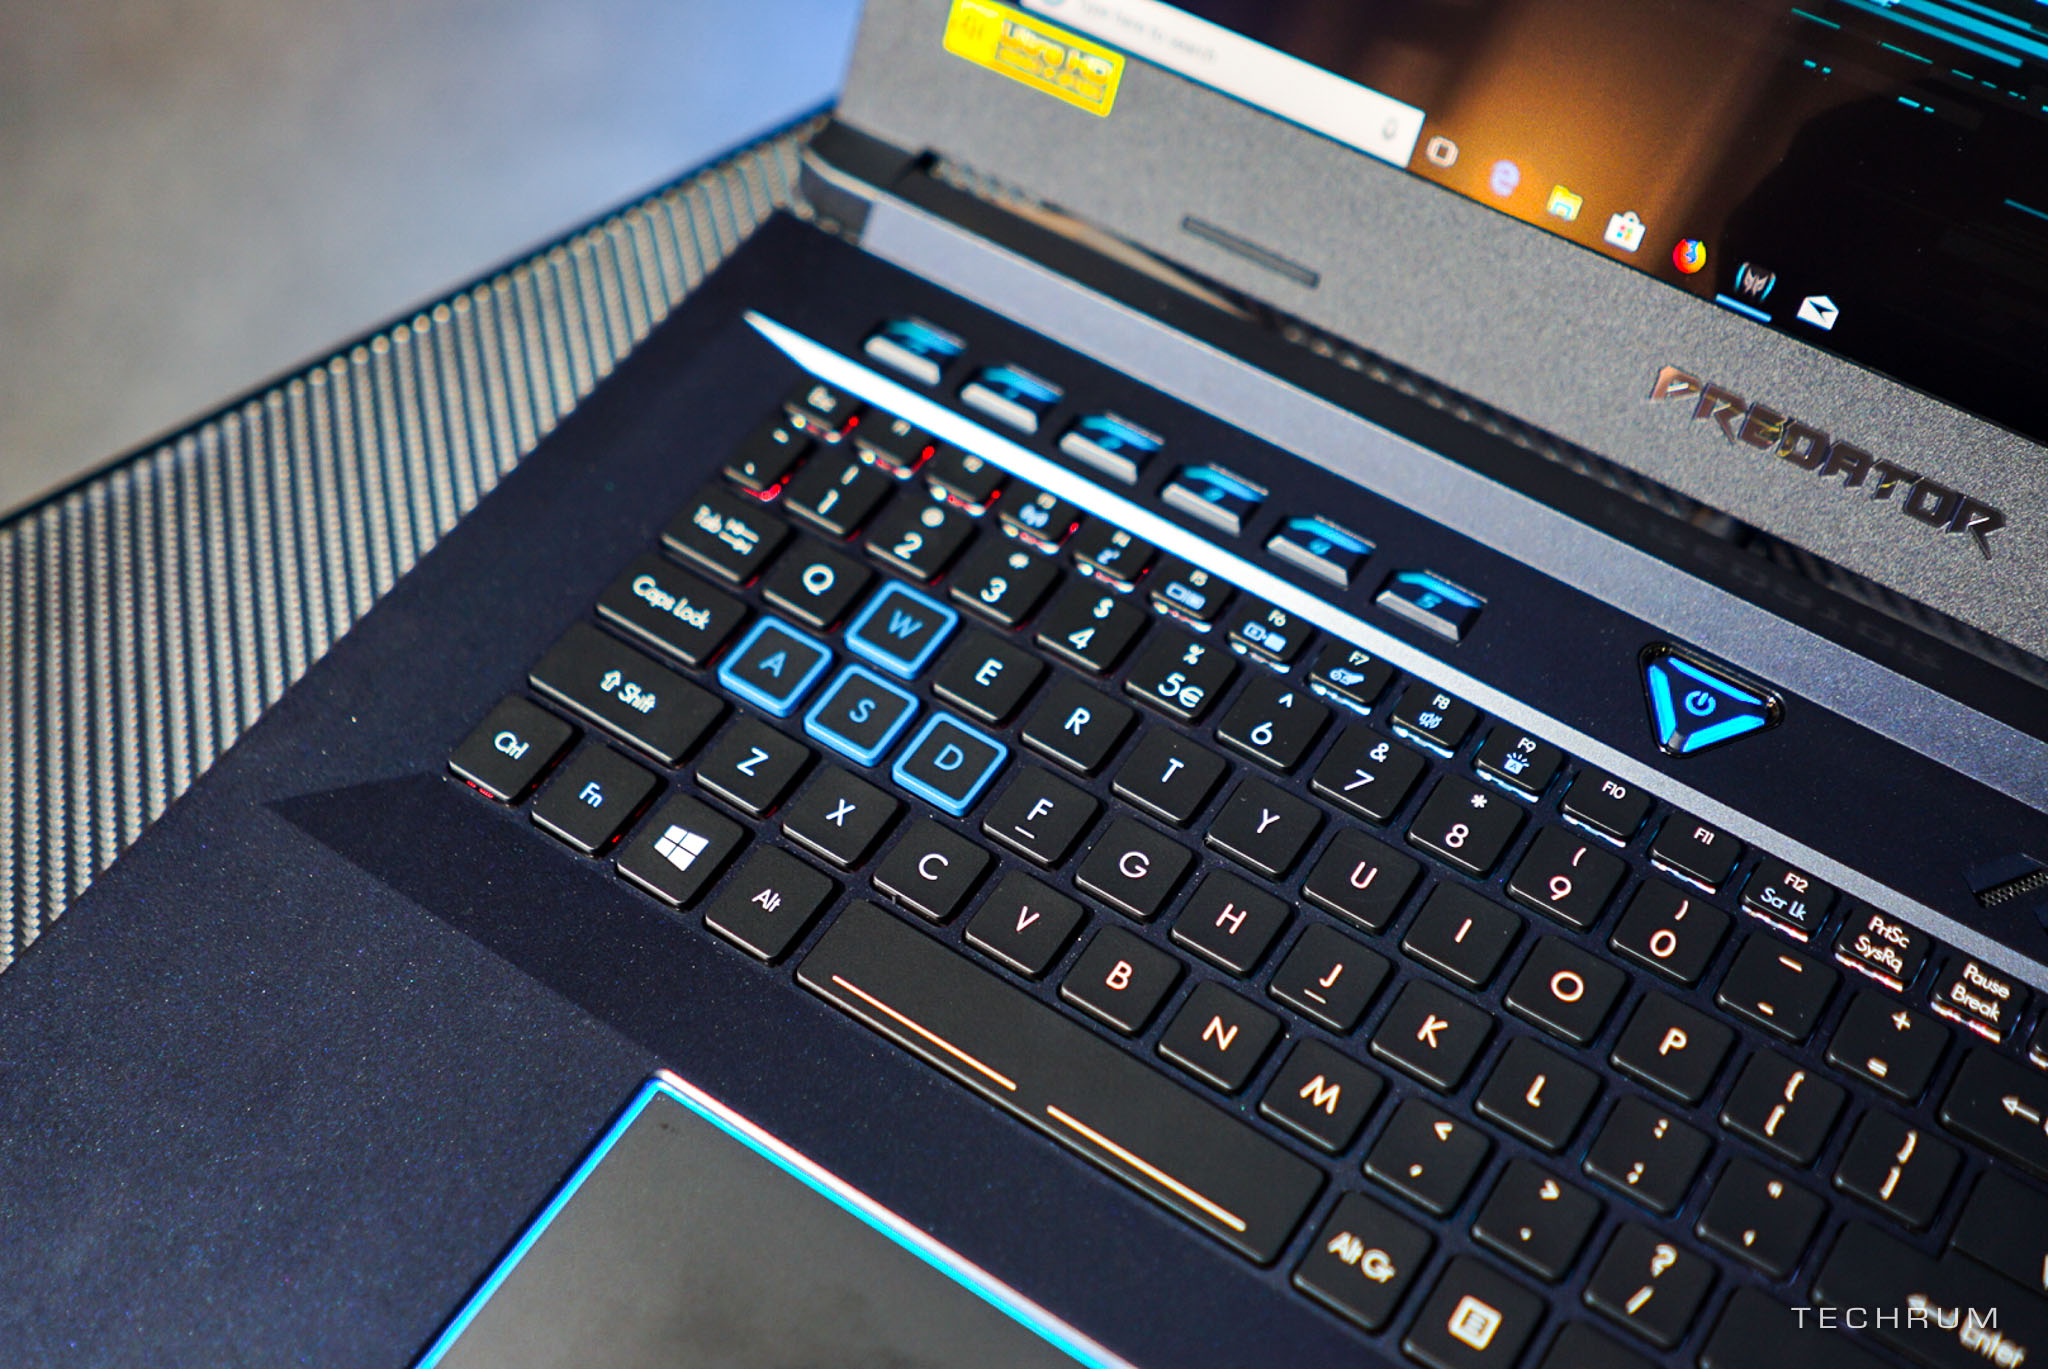 [Computex 2018] Cận
cảnh bộ đôi gaming laptop Predator Helios 500 & Helios
300 cấu hình khủng của Acer